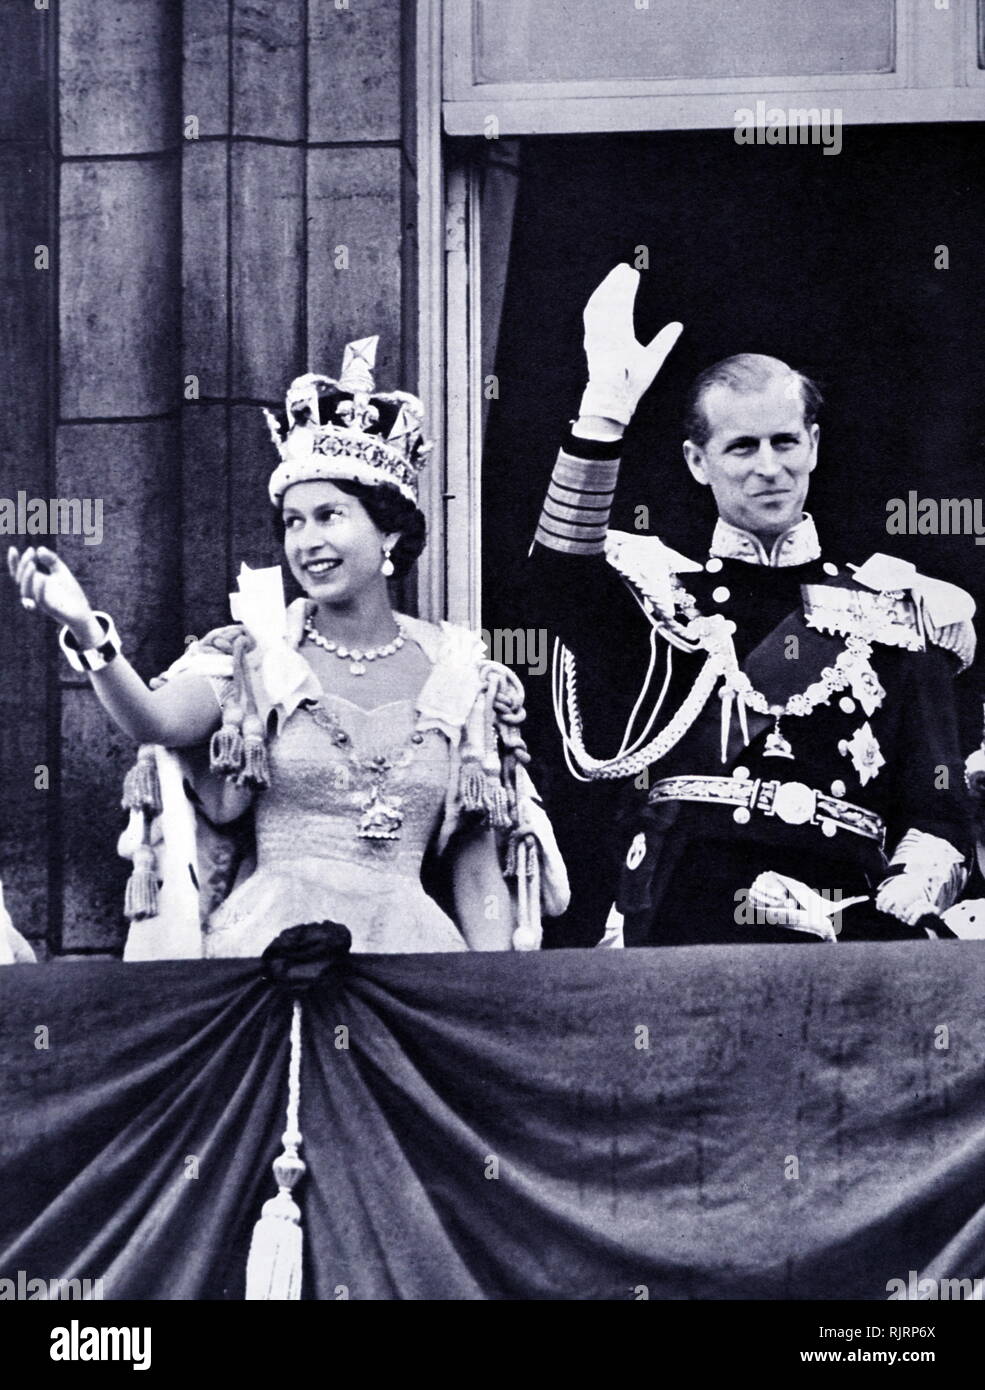 Die Kronung Von Elisabeth Ii Des Vereinigten Konigreichs Fand Am 2 Juni 1953 In Der Westminster